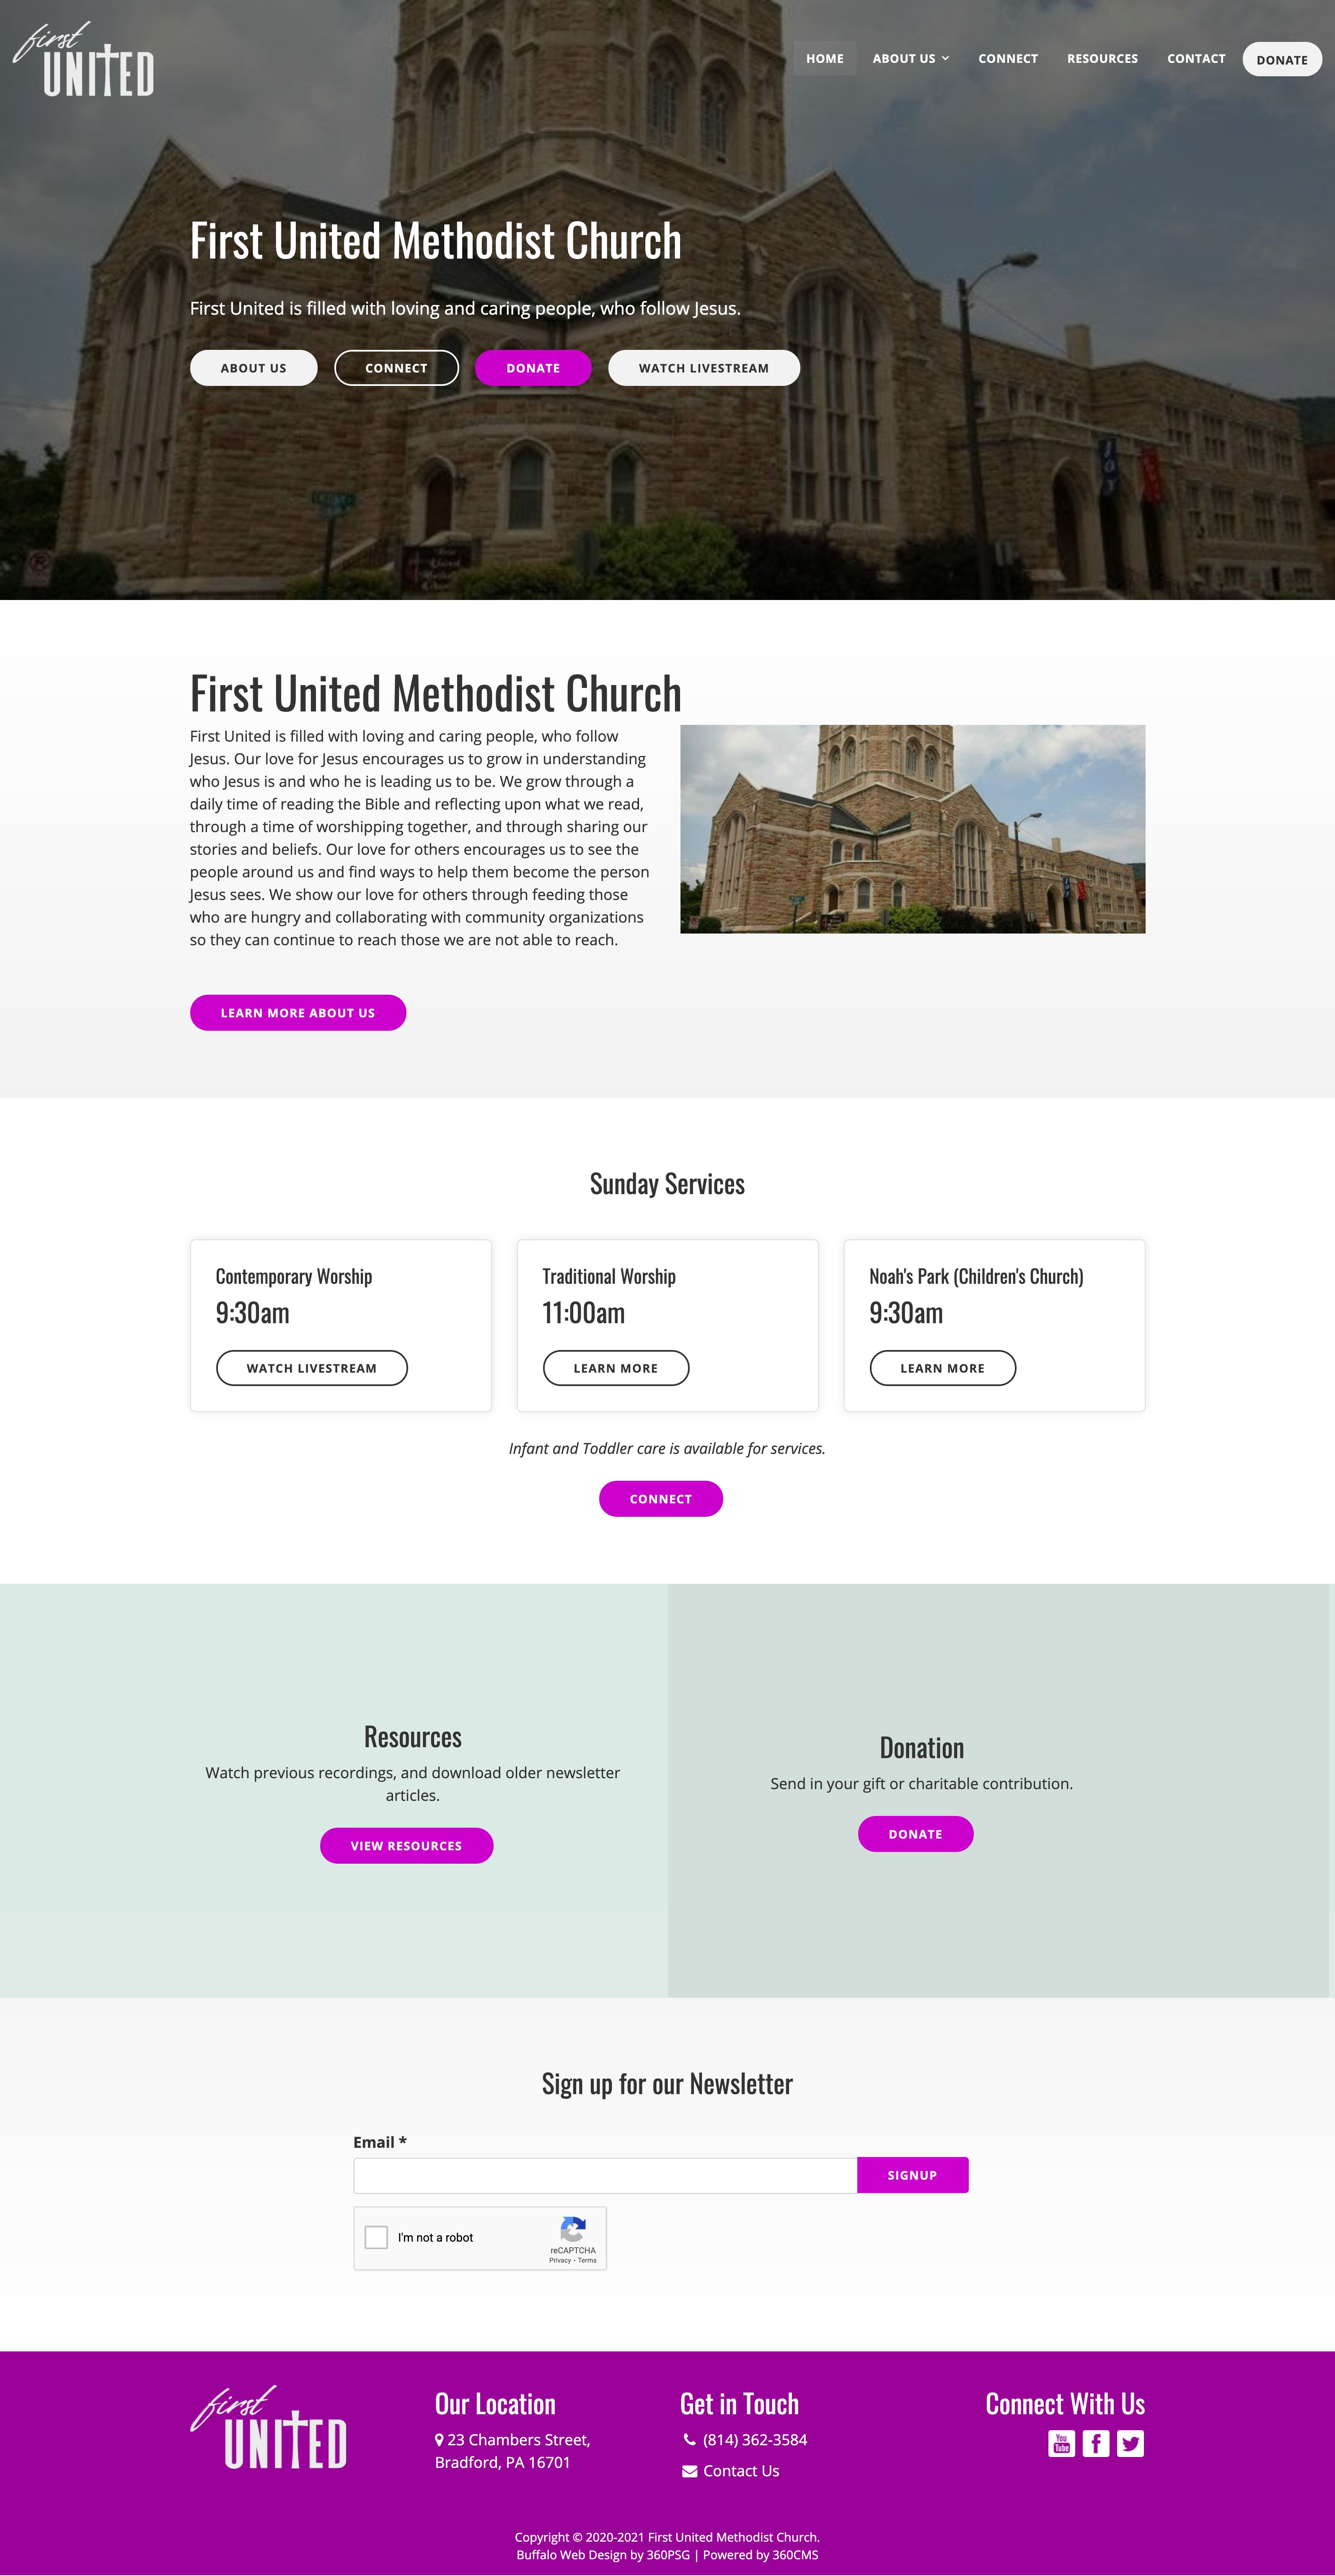 First United Methodist Church Website - Desktop